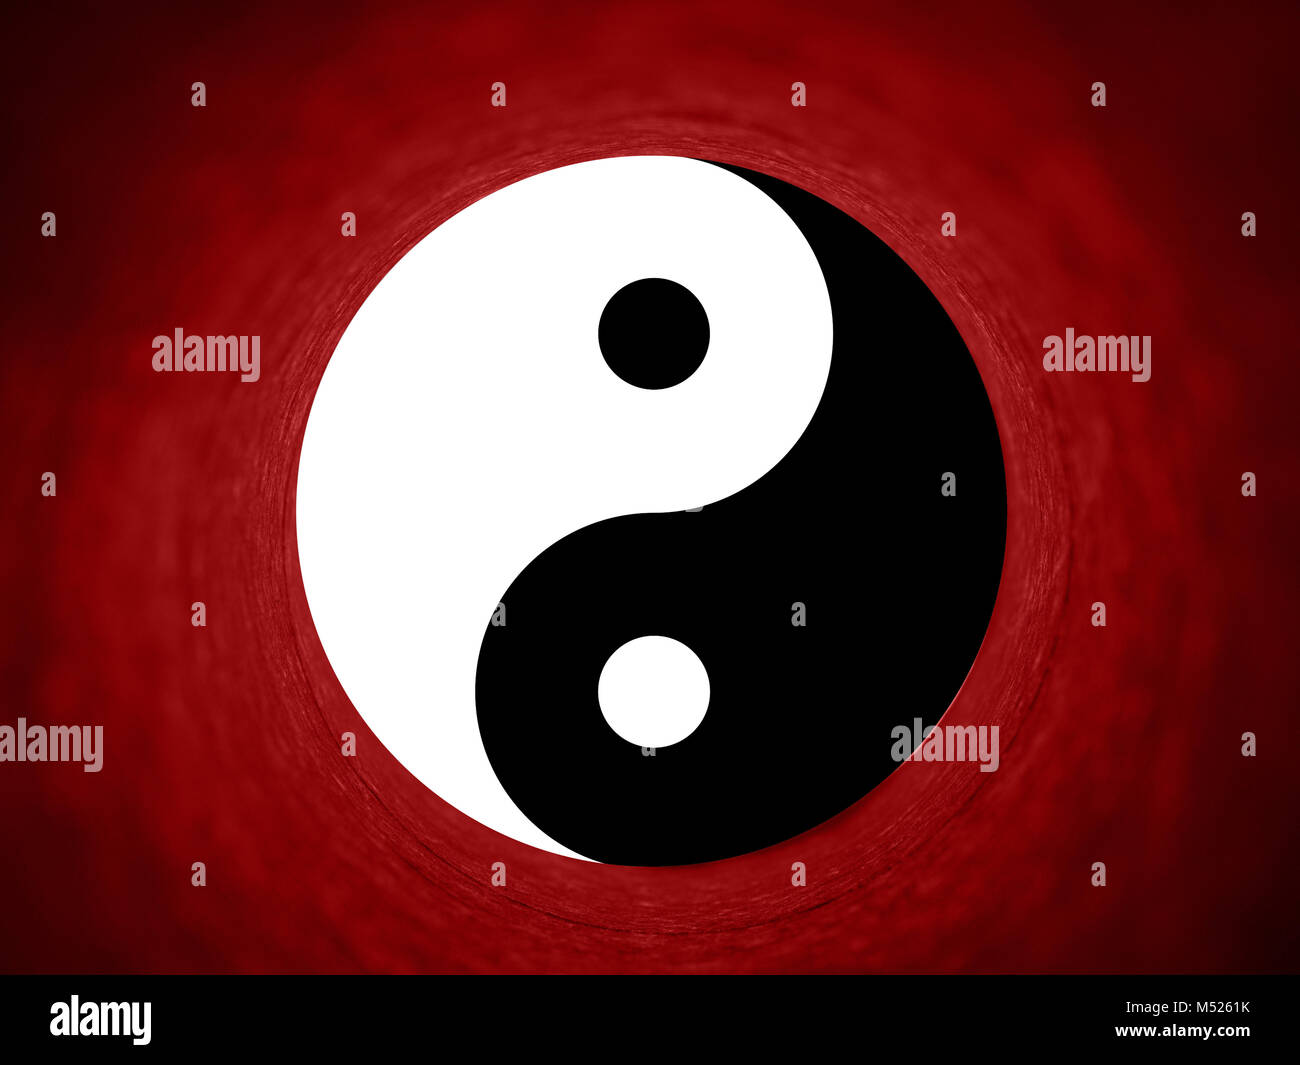 yin yang symbol Stock Photo